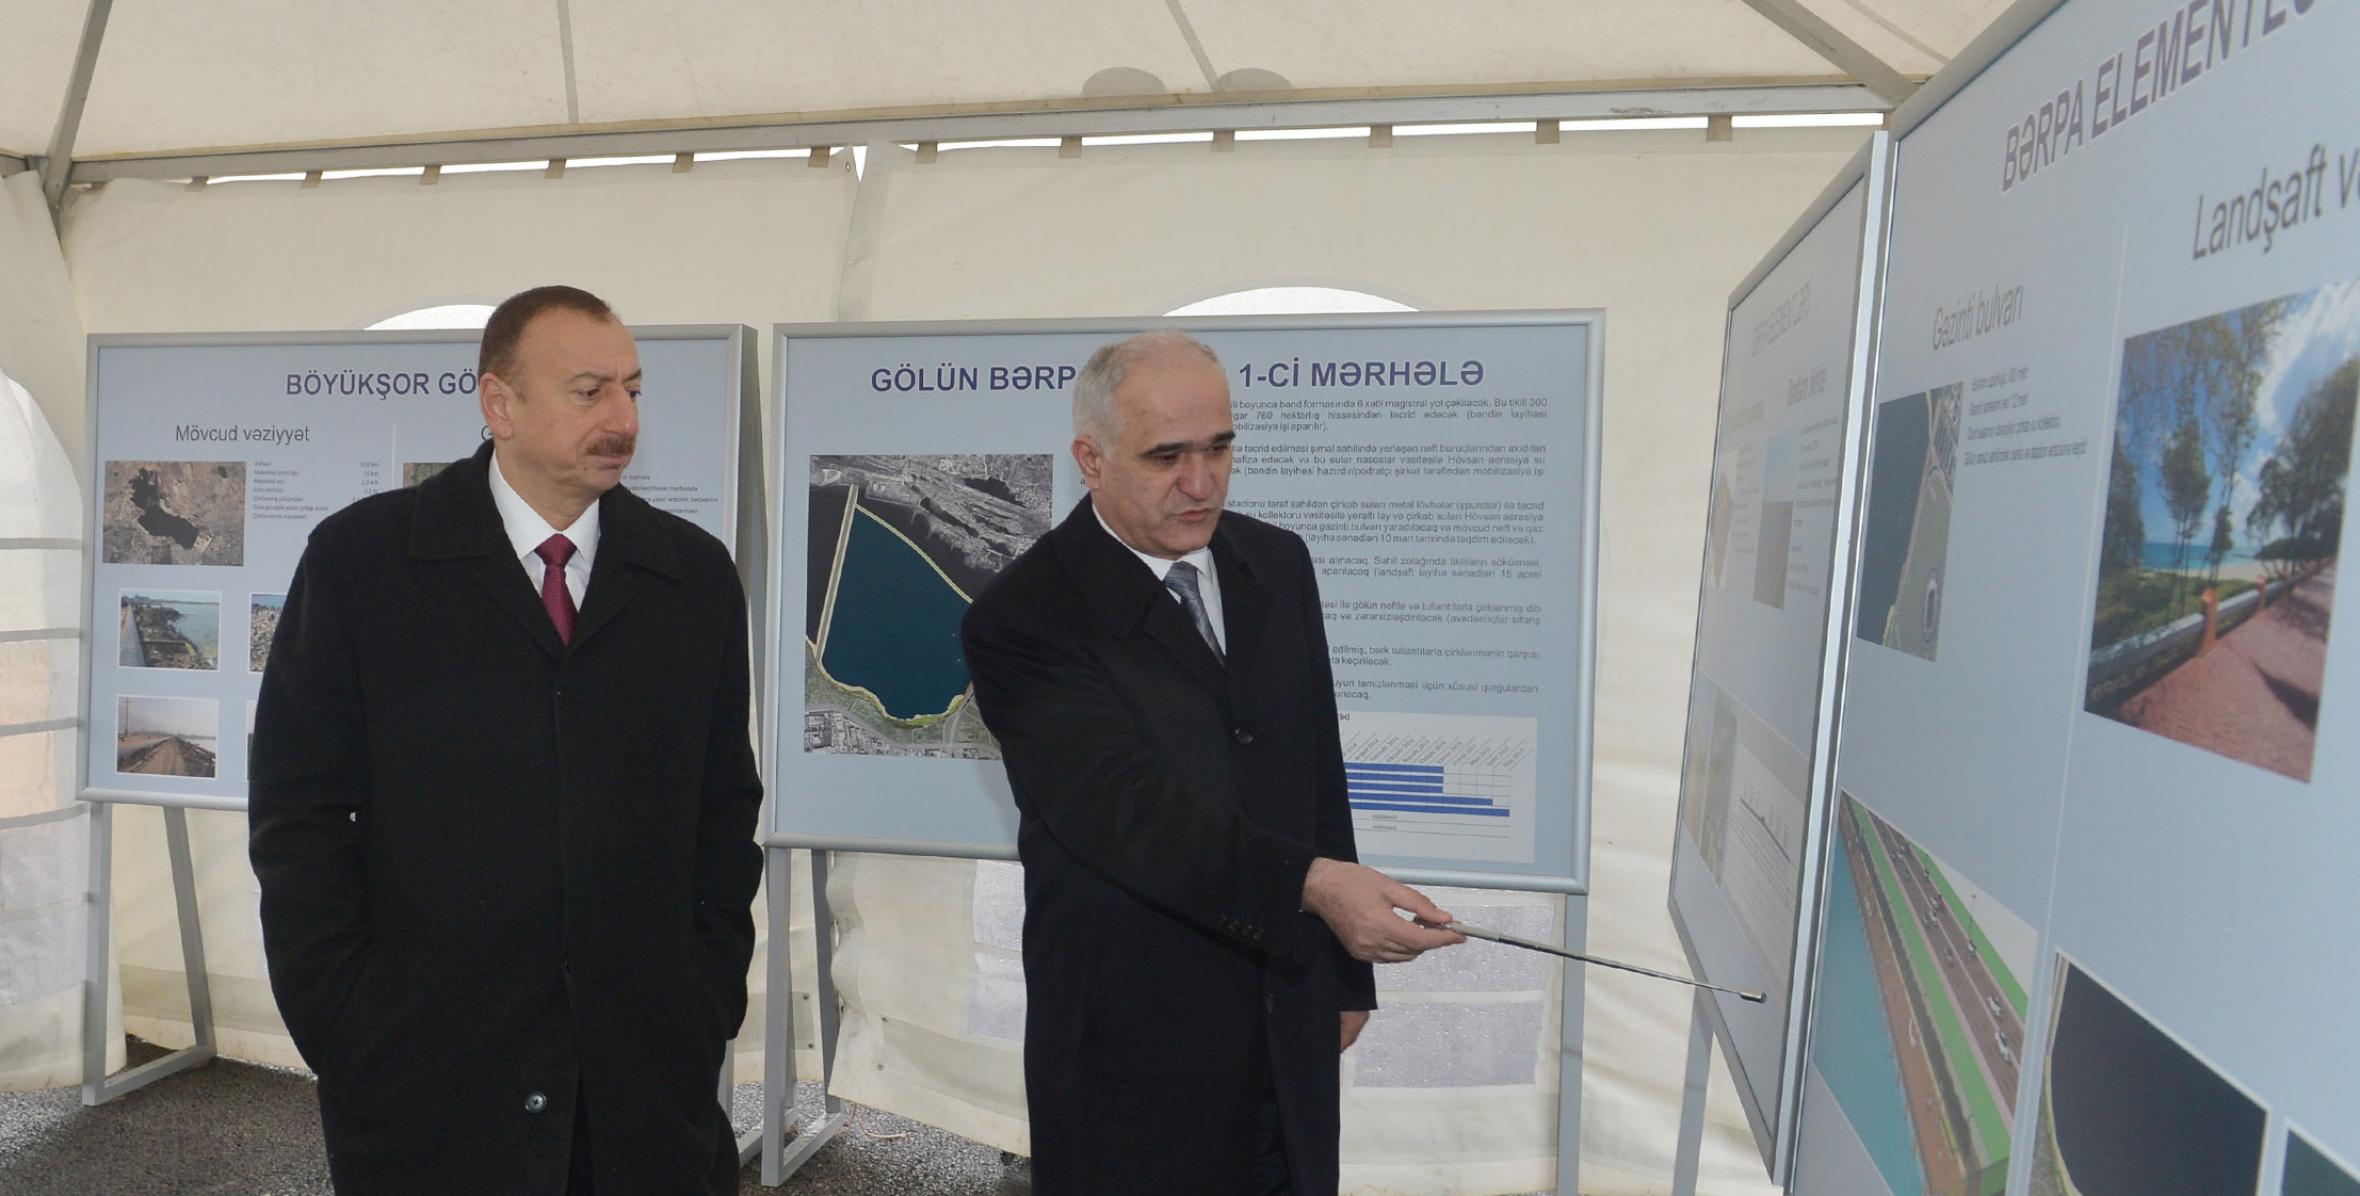 Ильхам Алиев ознакомился с ходом работ, проводимых в направлении улучшения экологического  состояния озера Беюкшор и прилегающей территории